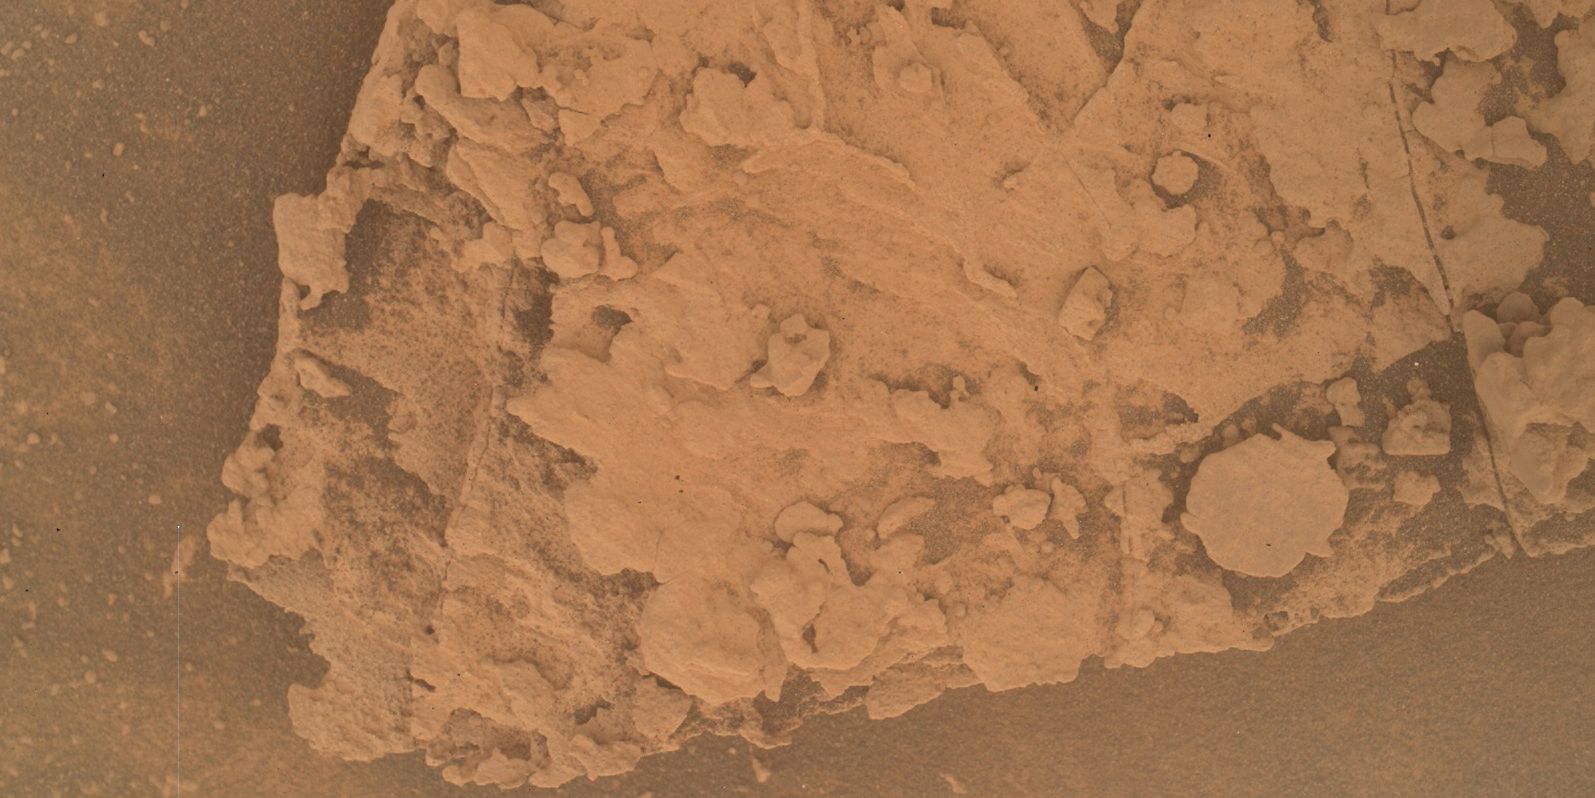 El rover de la NASA comparte fotos súper detalladas de la fascinante superficie de Marte